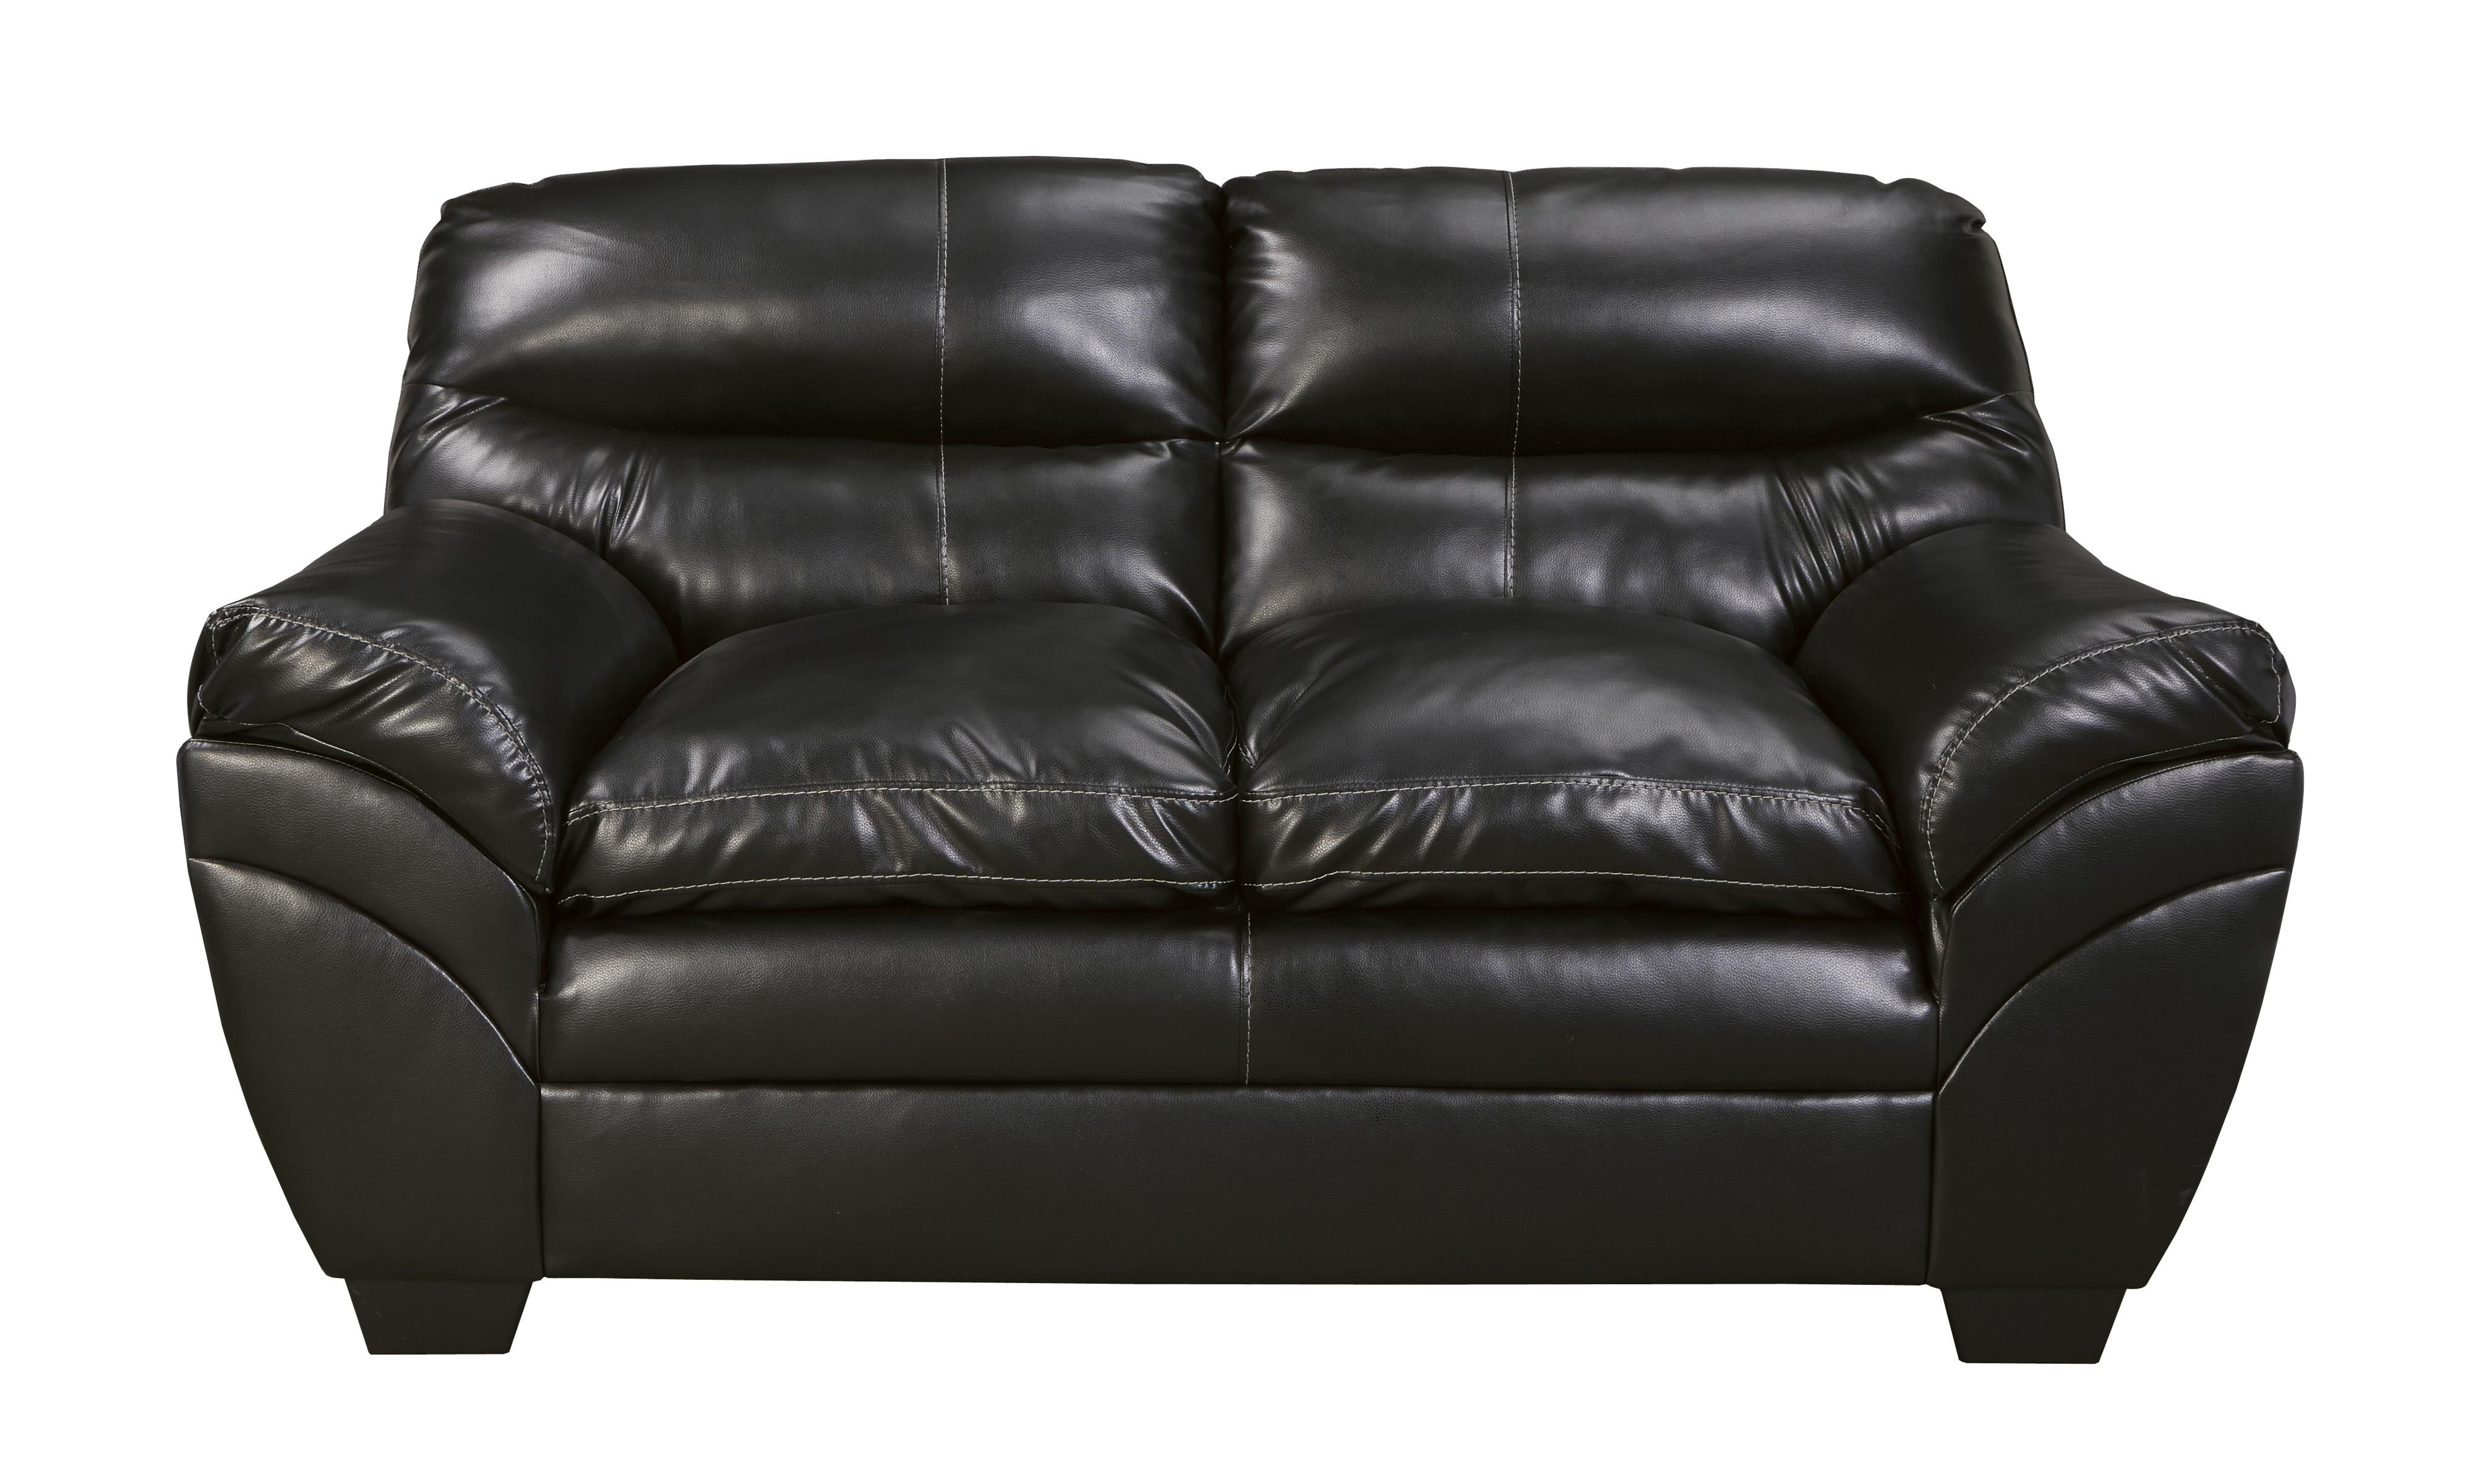 

    
Ashley Furniture Tassler Living Room Set Black 46501-38-35-25-KIT
